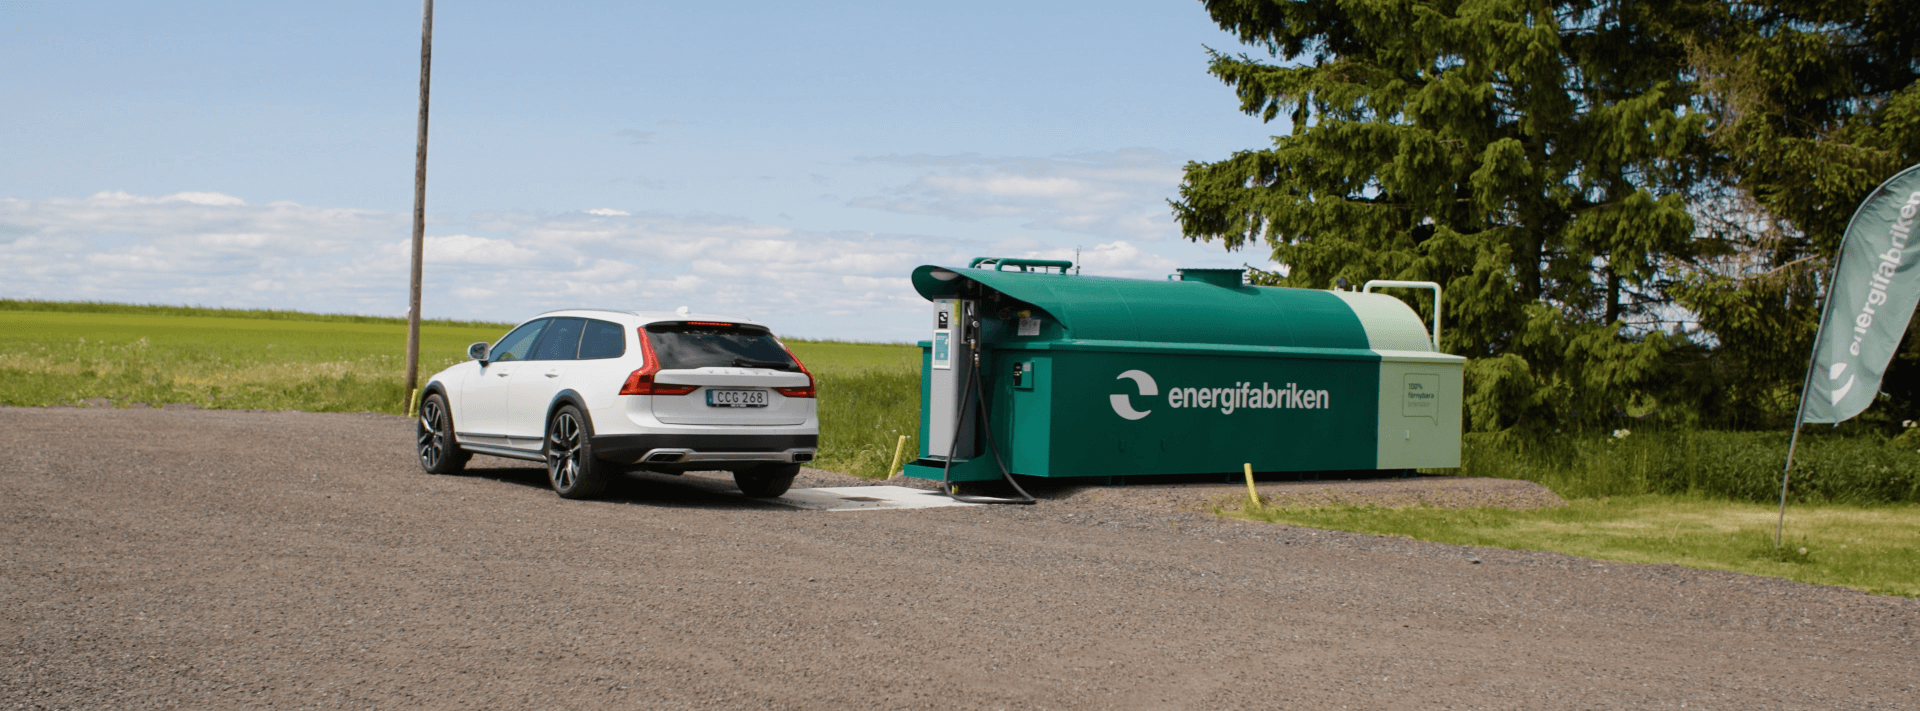 Miljövänlig bil vid tankstation för förnybara drivmedel